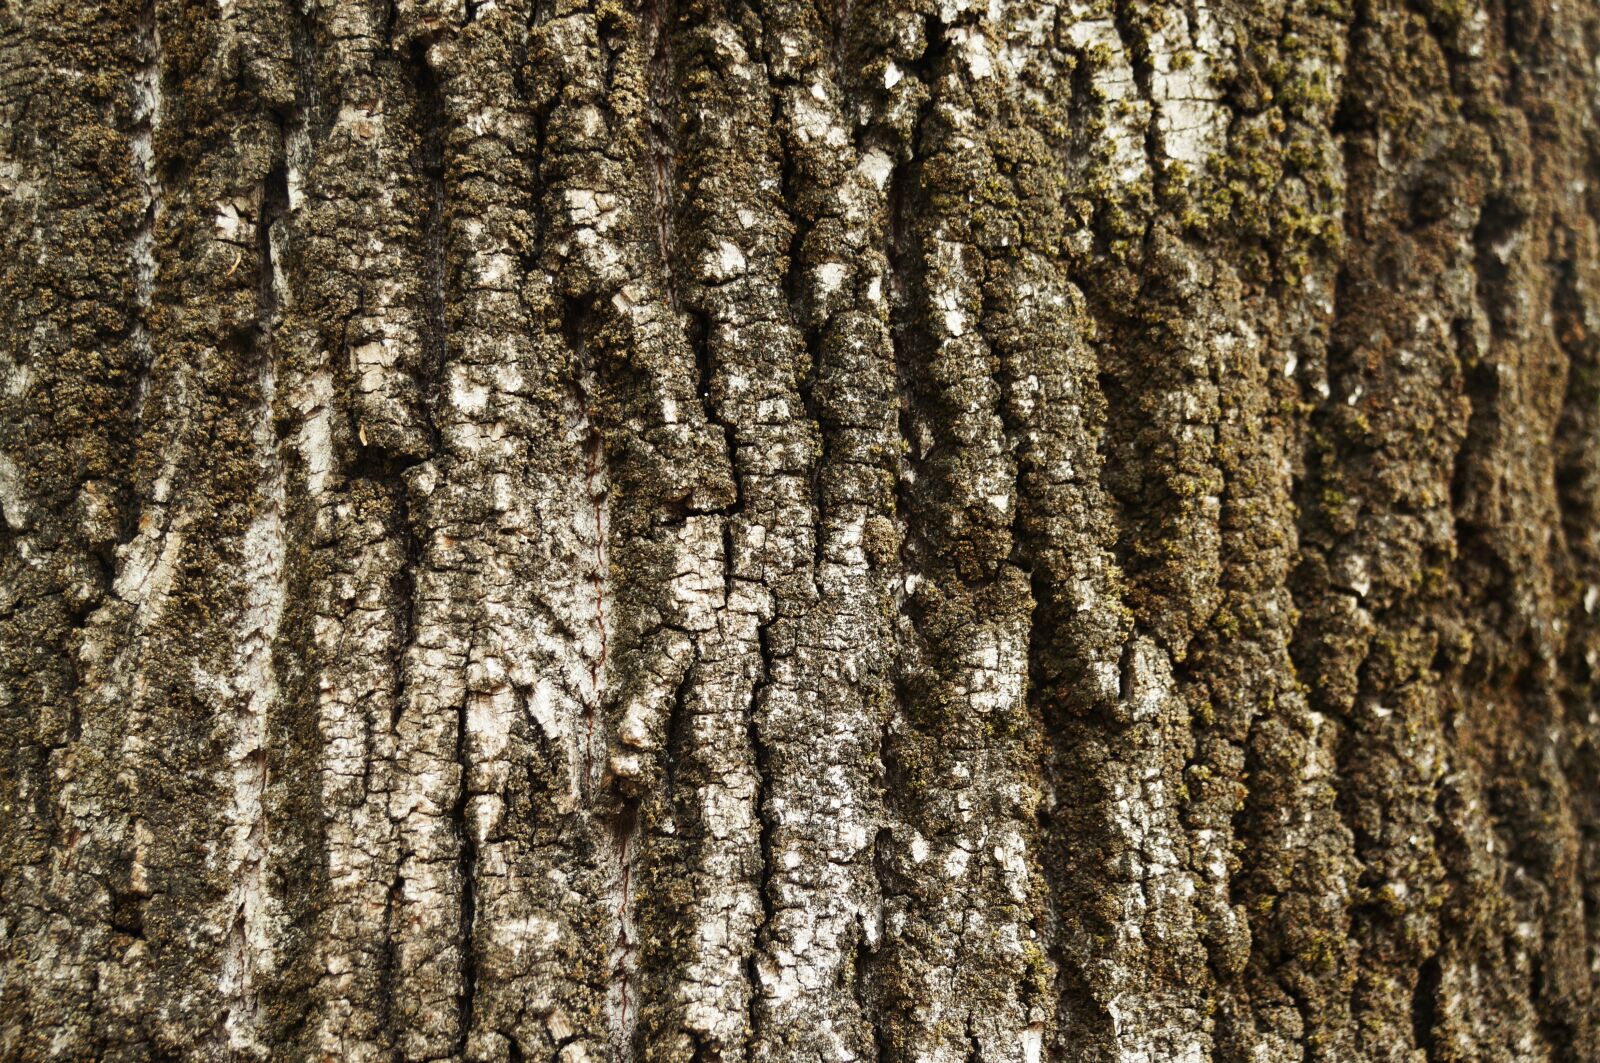 Sony NEX-VG20E sample photo. Texture, bark, tree photography